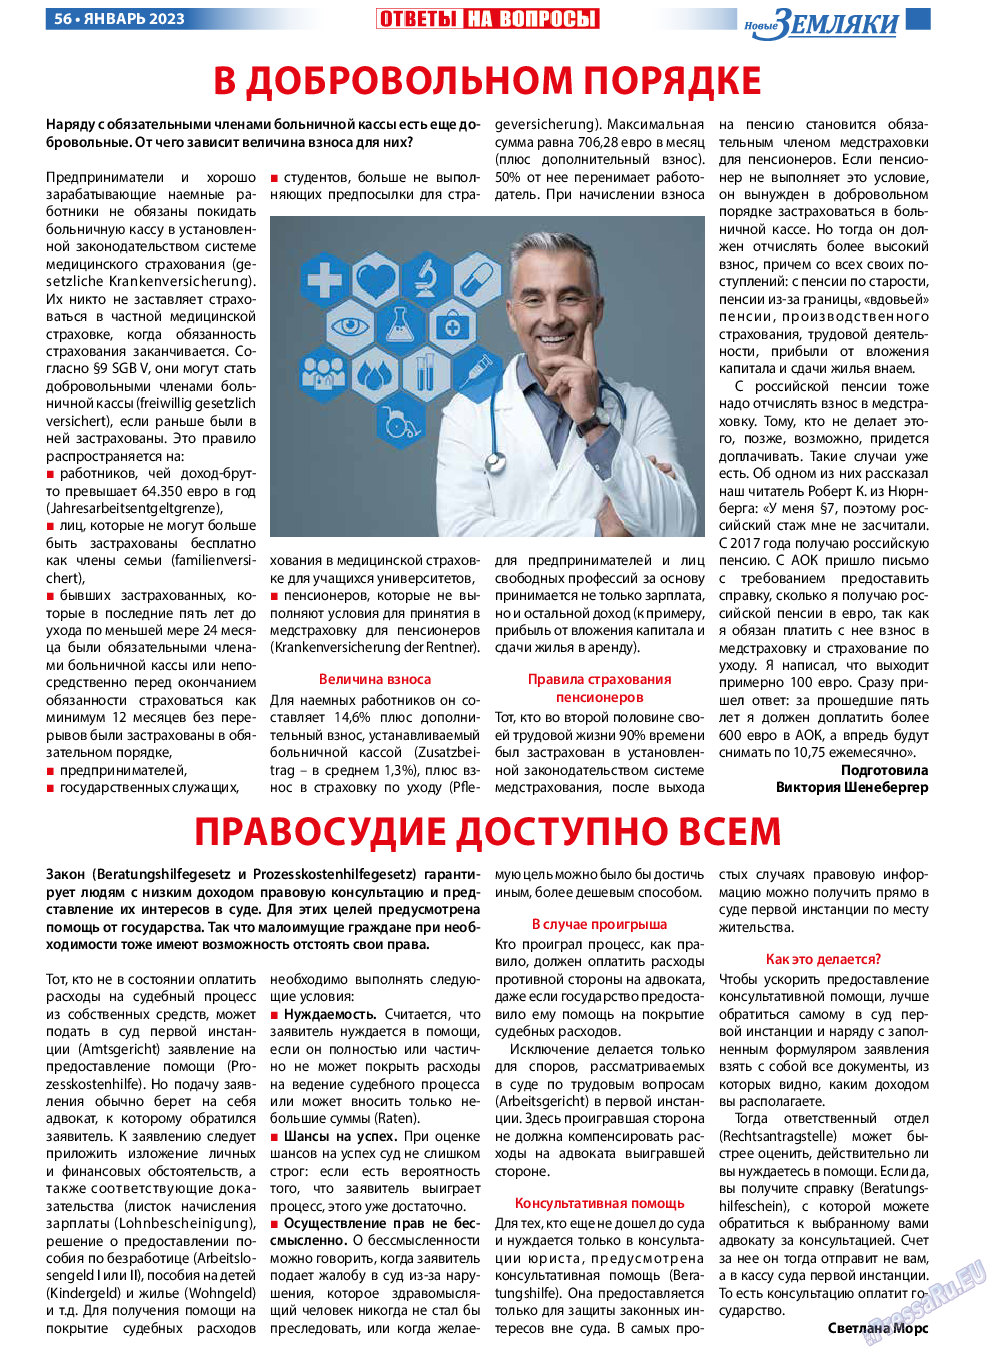 Новые Земляки, газета. 2023 №1 стр.56